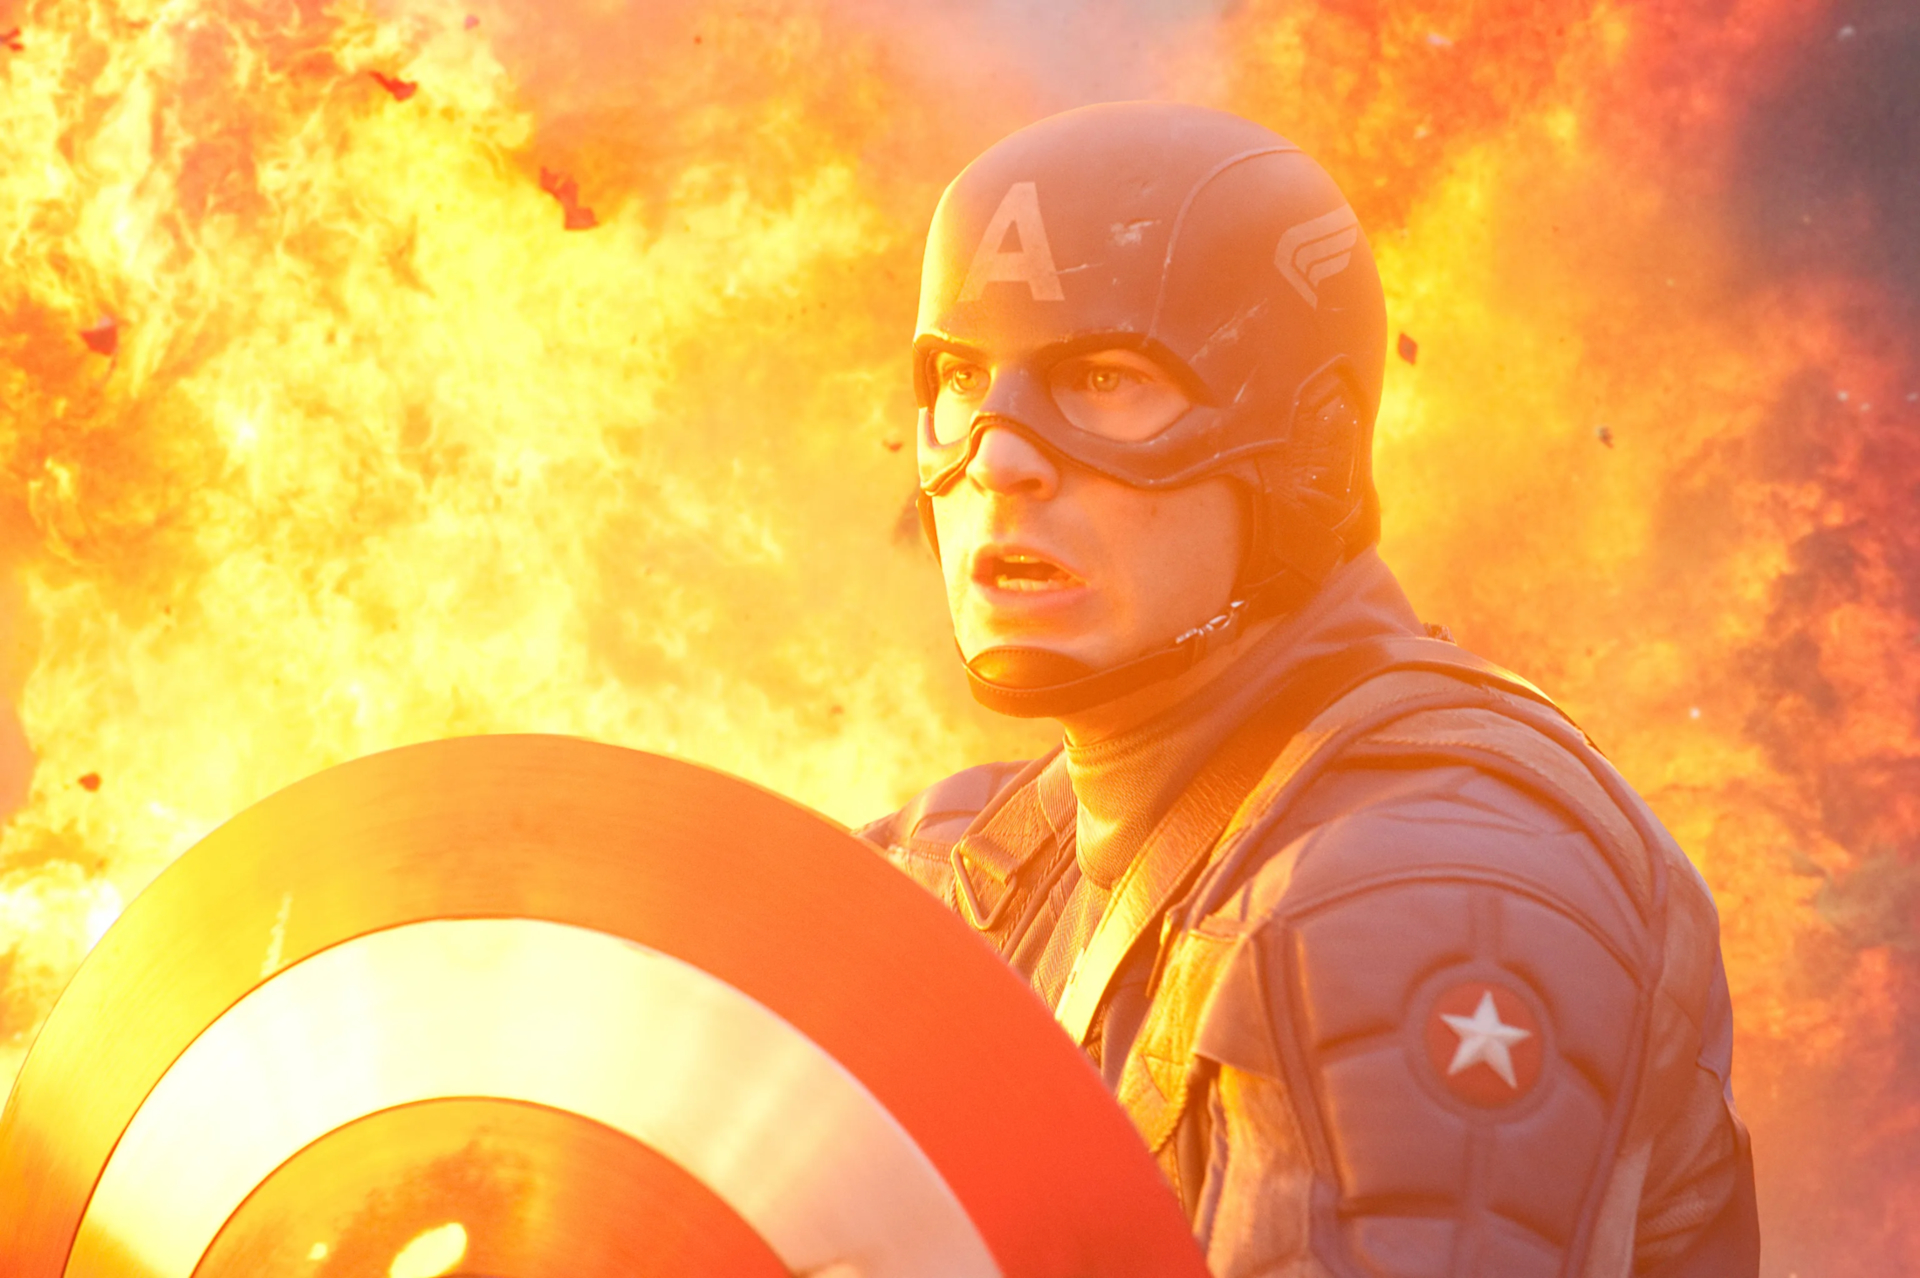 Скачать обои бесплатно Кино, Капитан Америка, Первый Мститель картинка на рабочий стол ПК